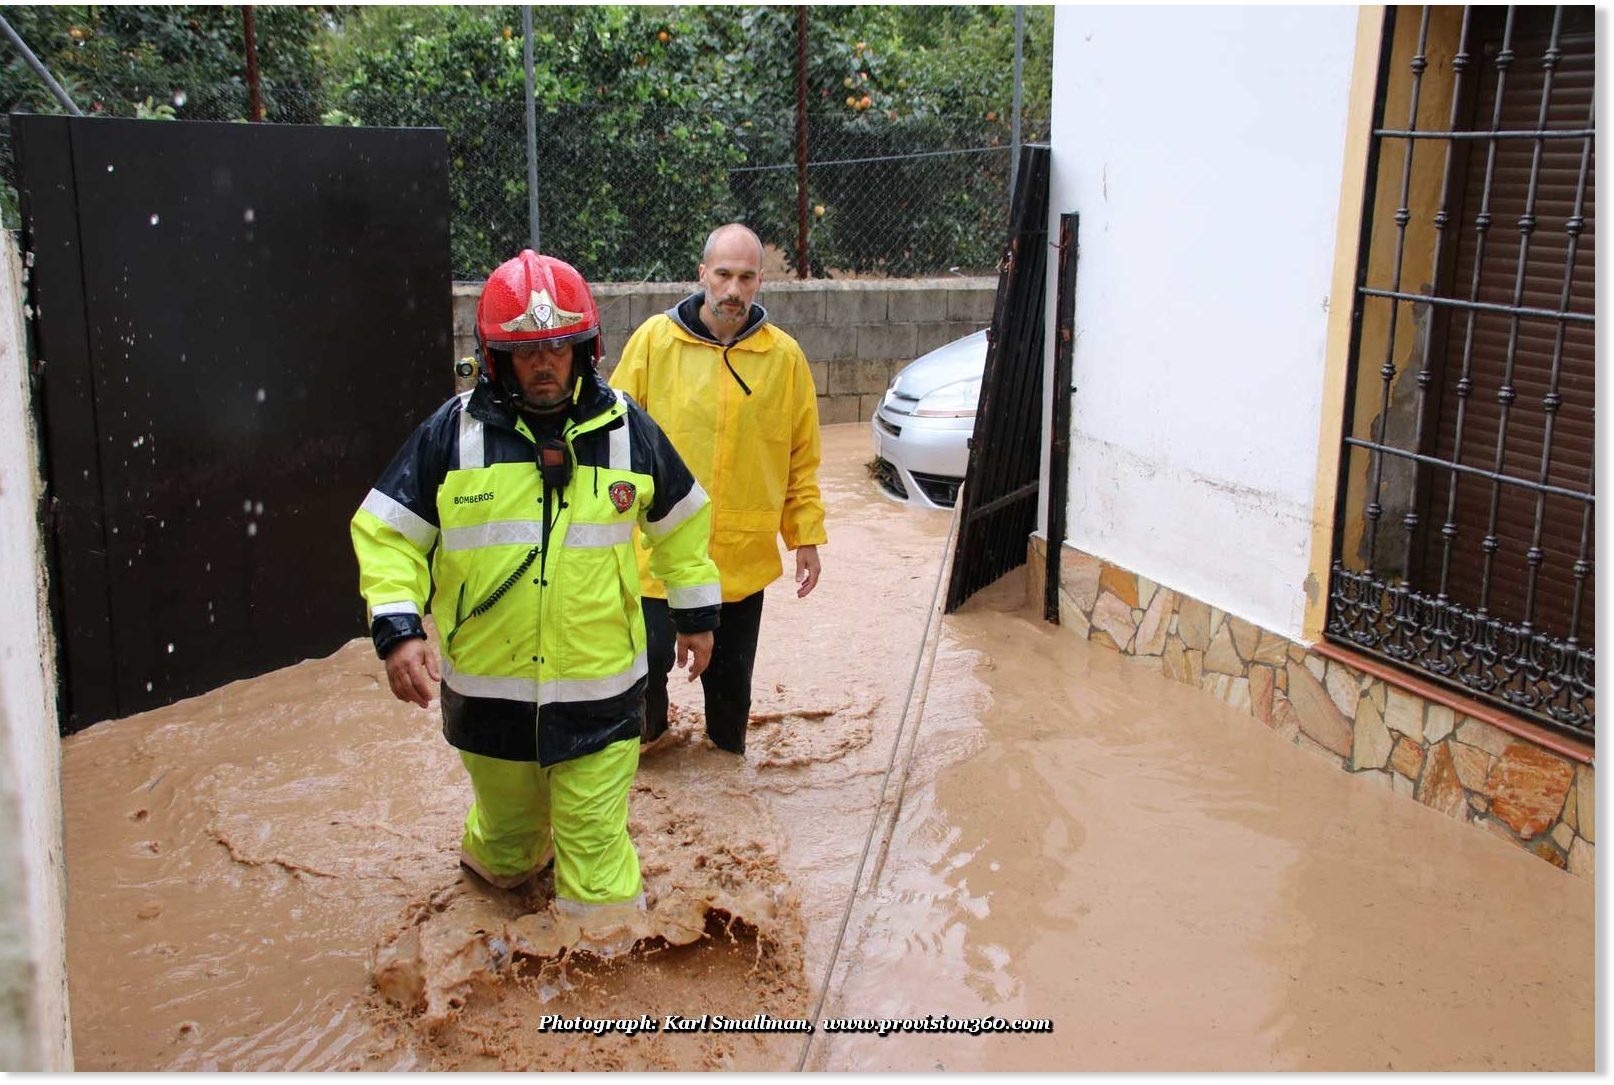 Poplave Andaluzija